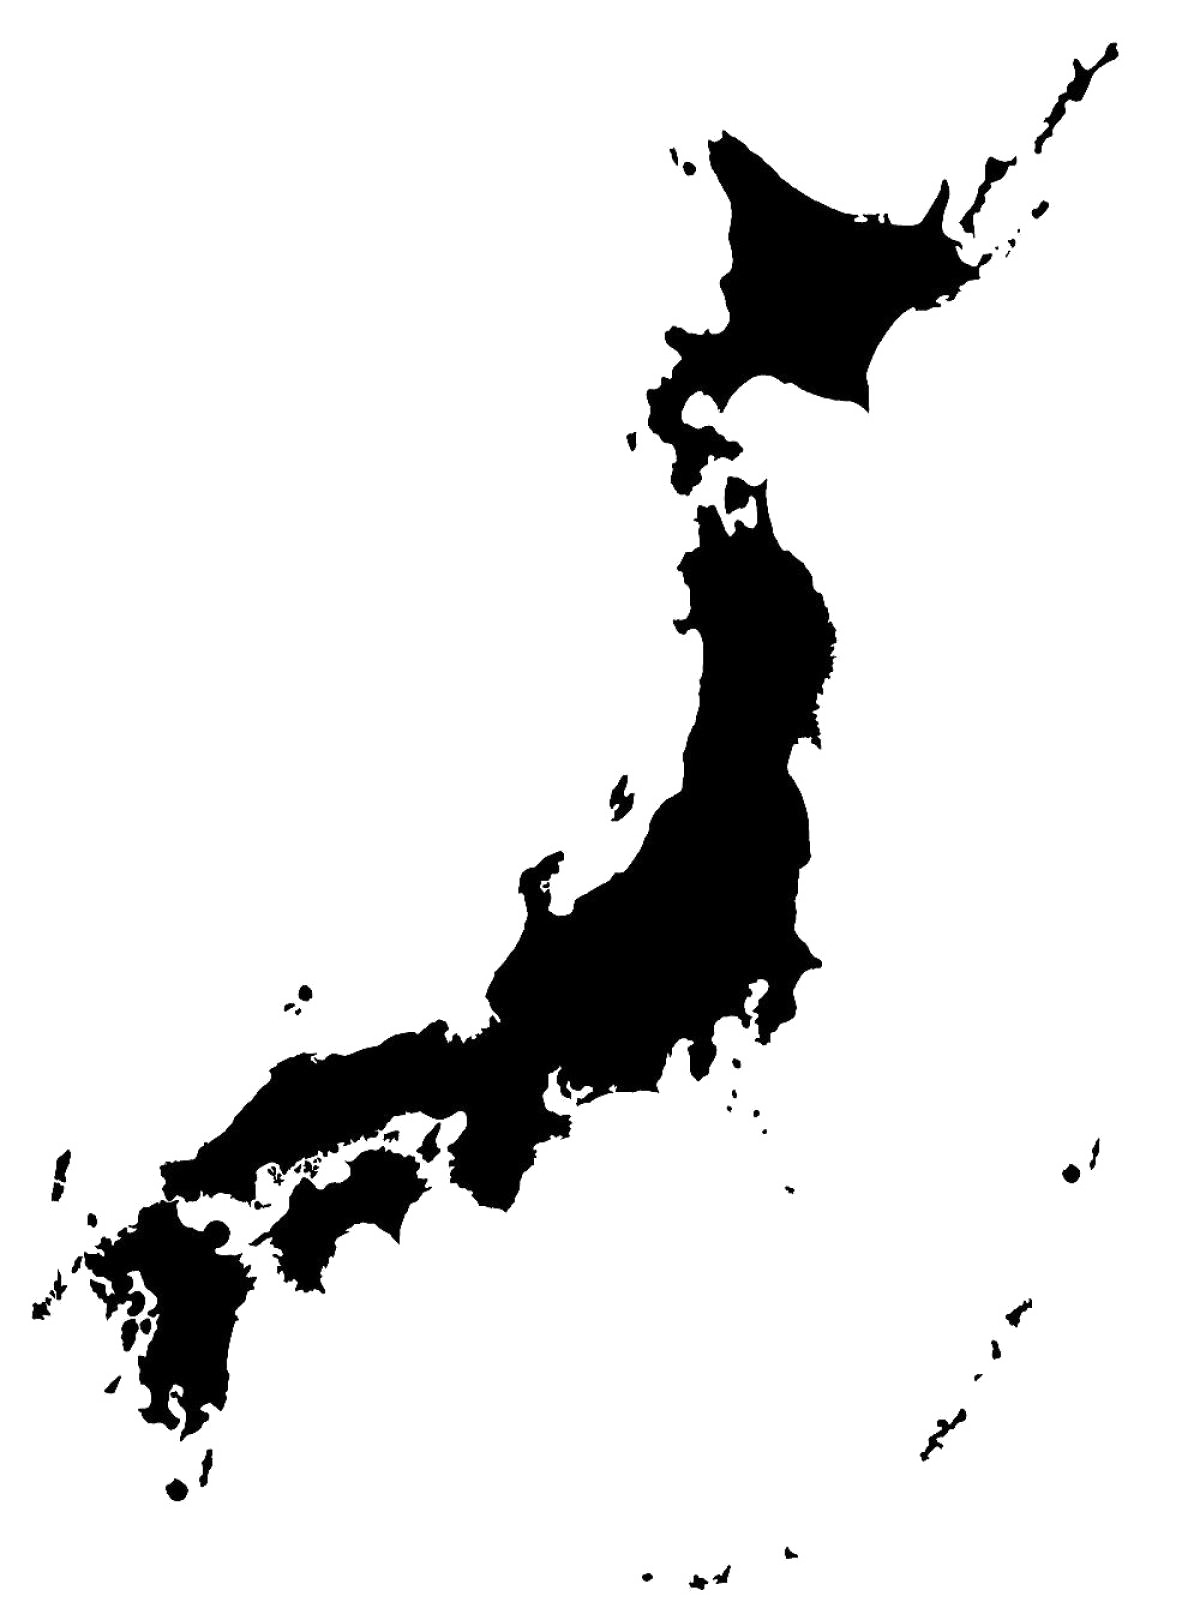 Japan Map PNG Transparent Image